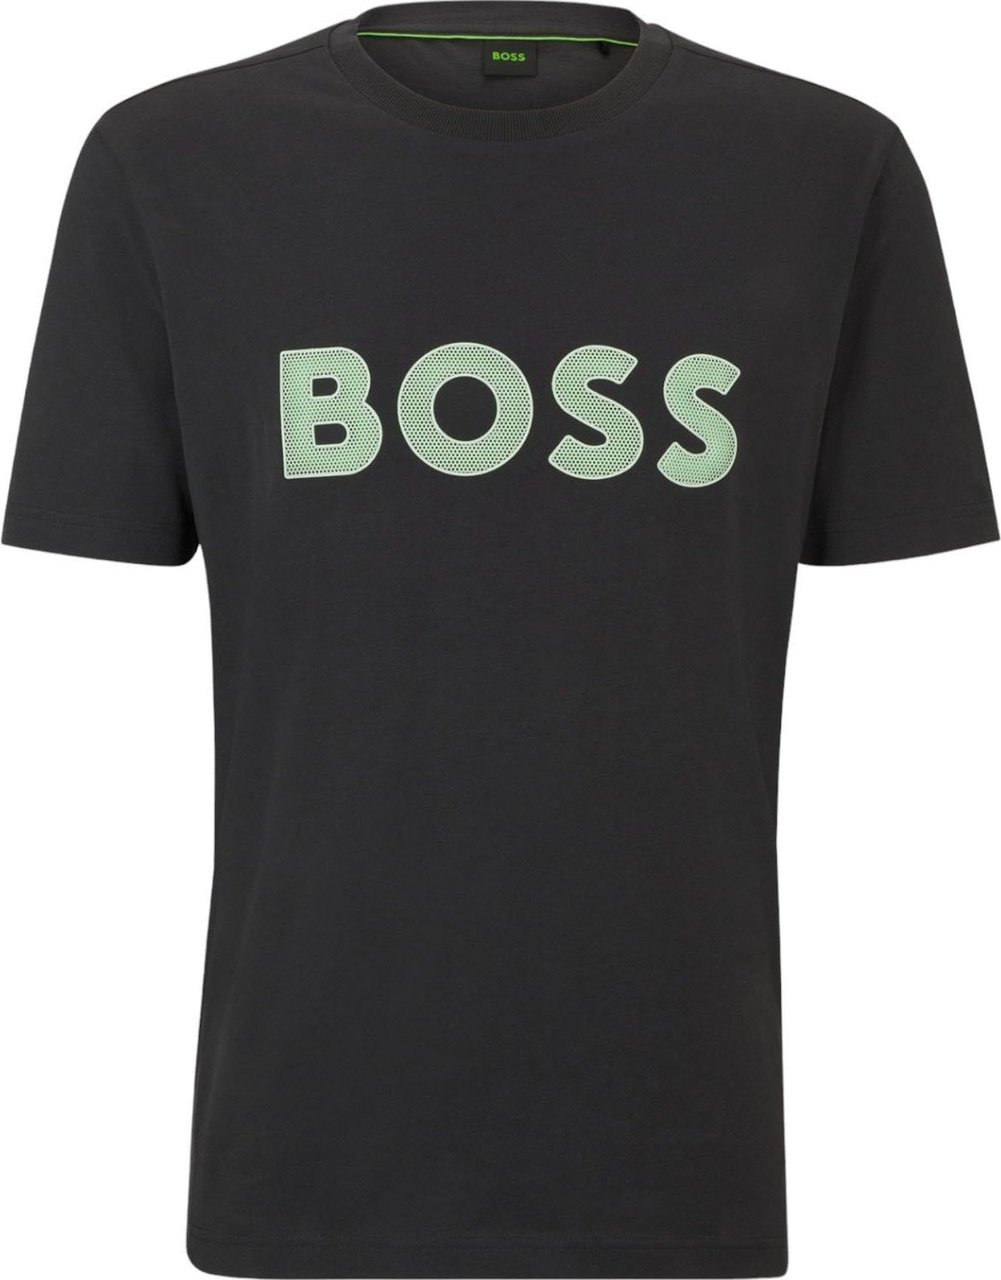 Hugo Boss Boss Heren T-shirt Grijs 50512866/016 TEE 1 Grijs